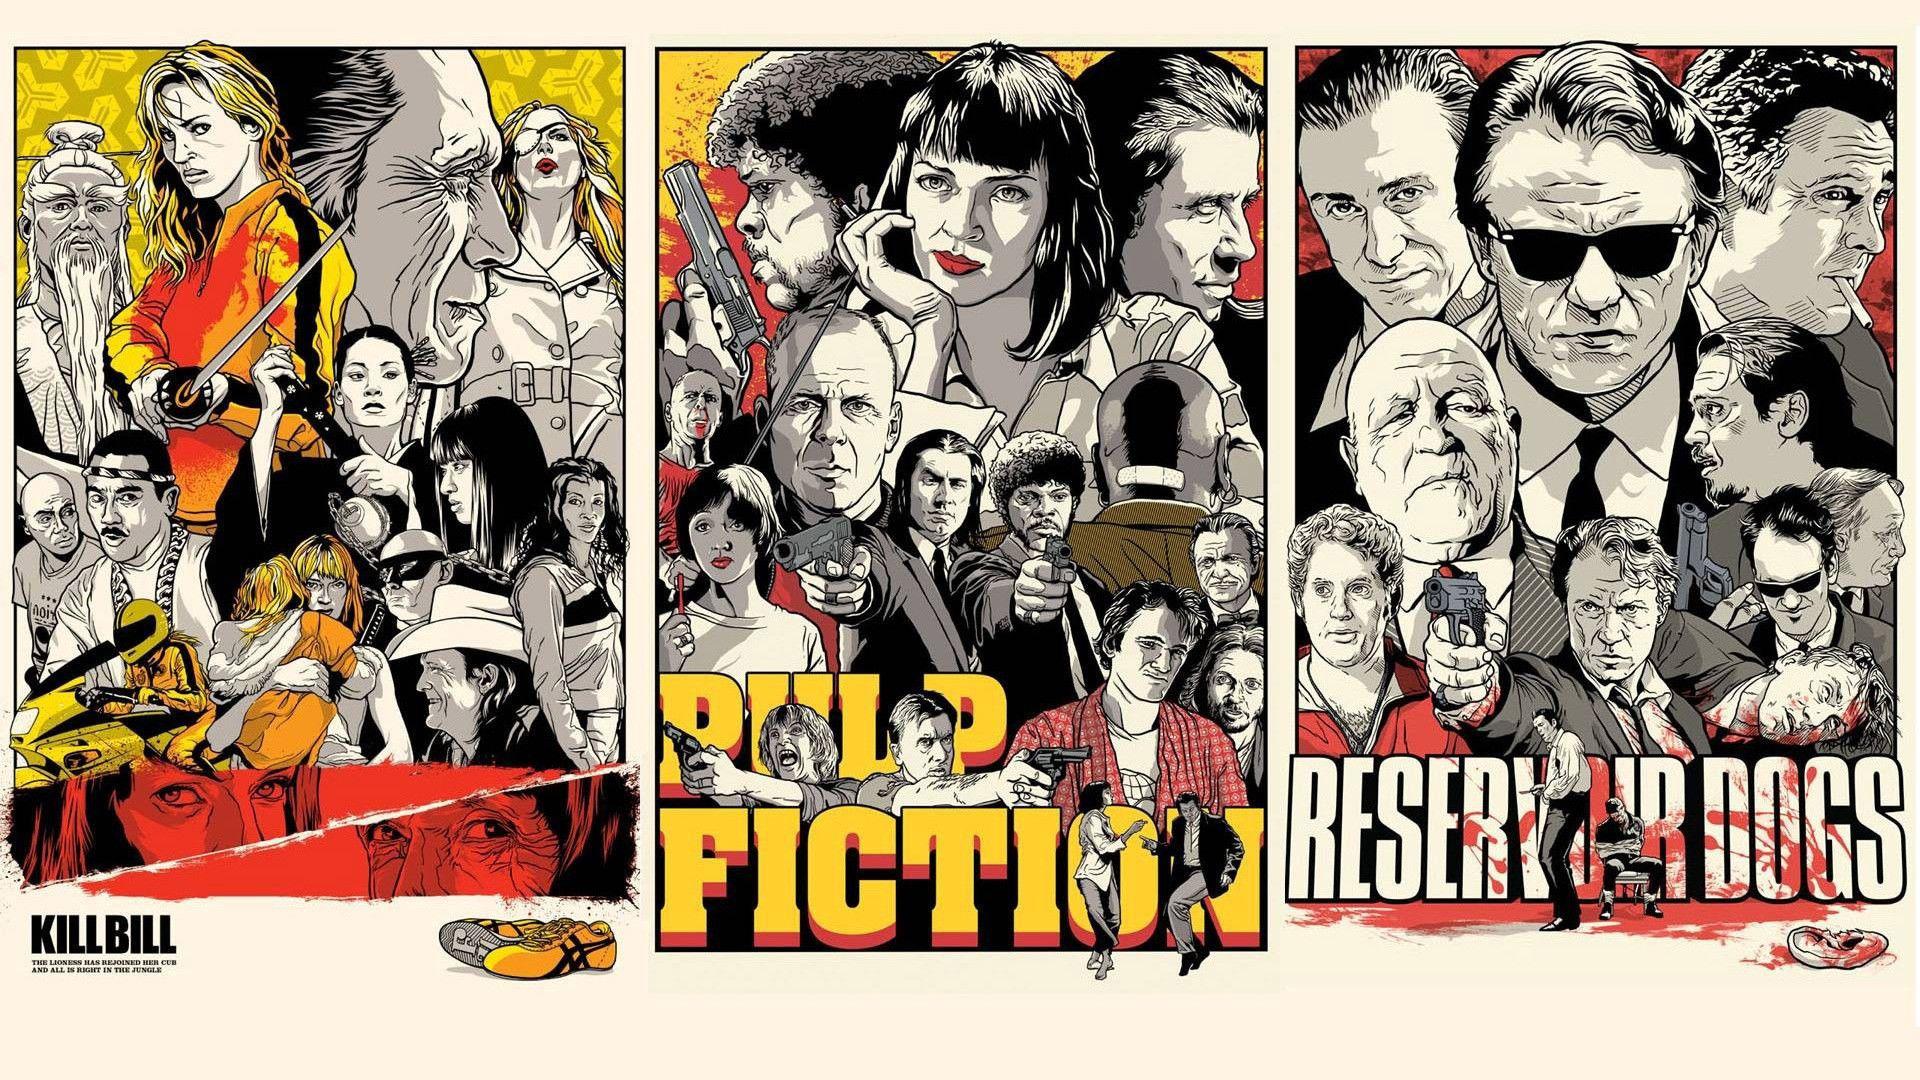 Pulp Fiction Wallpaper